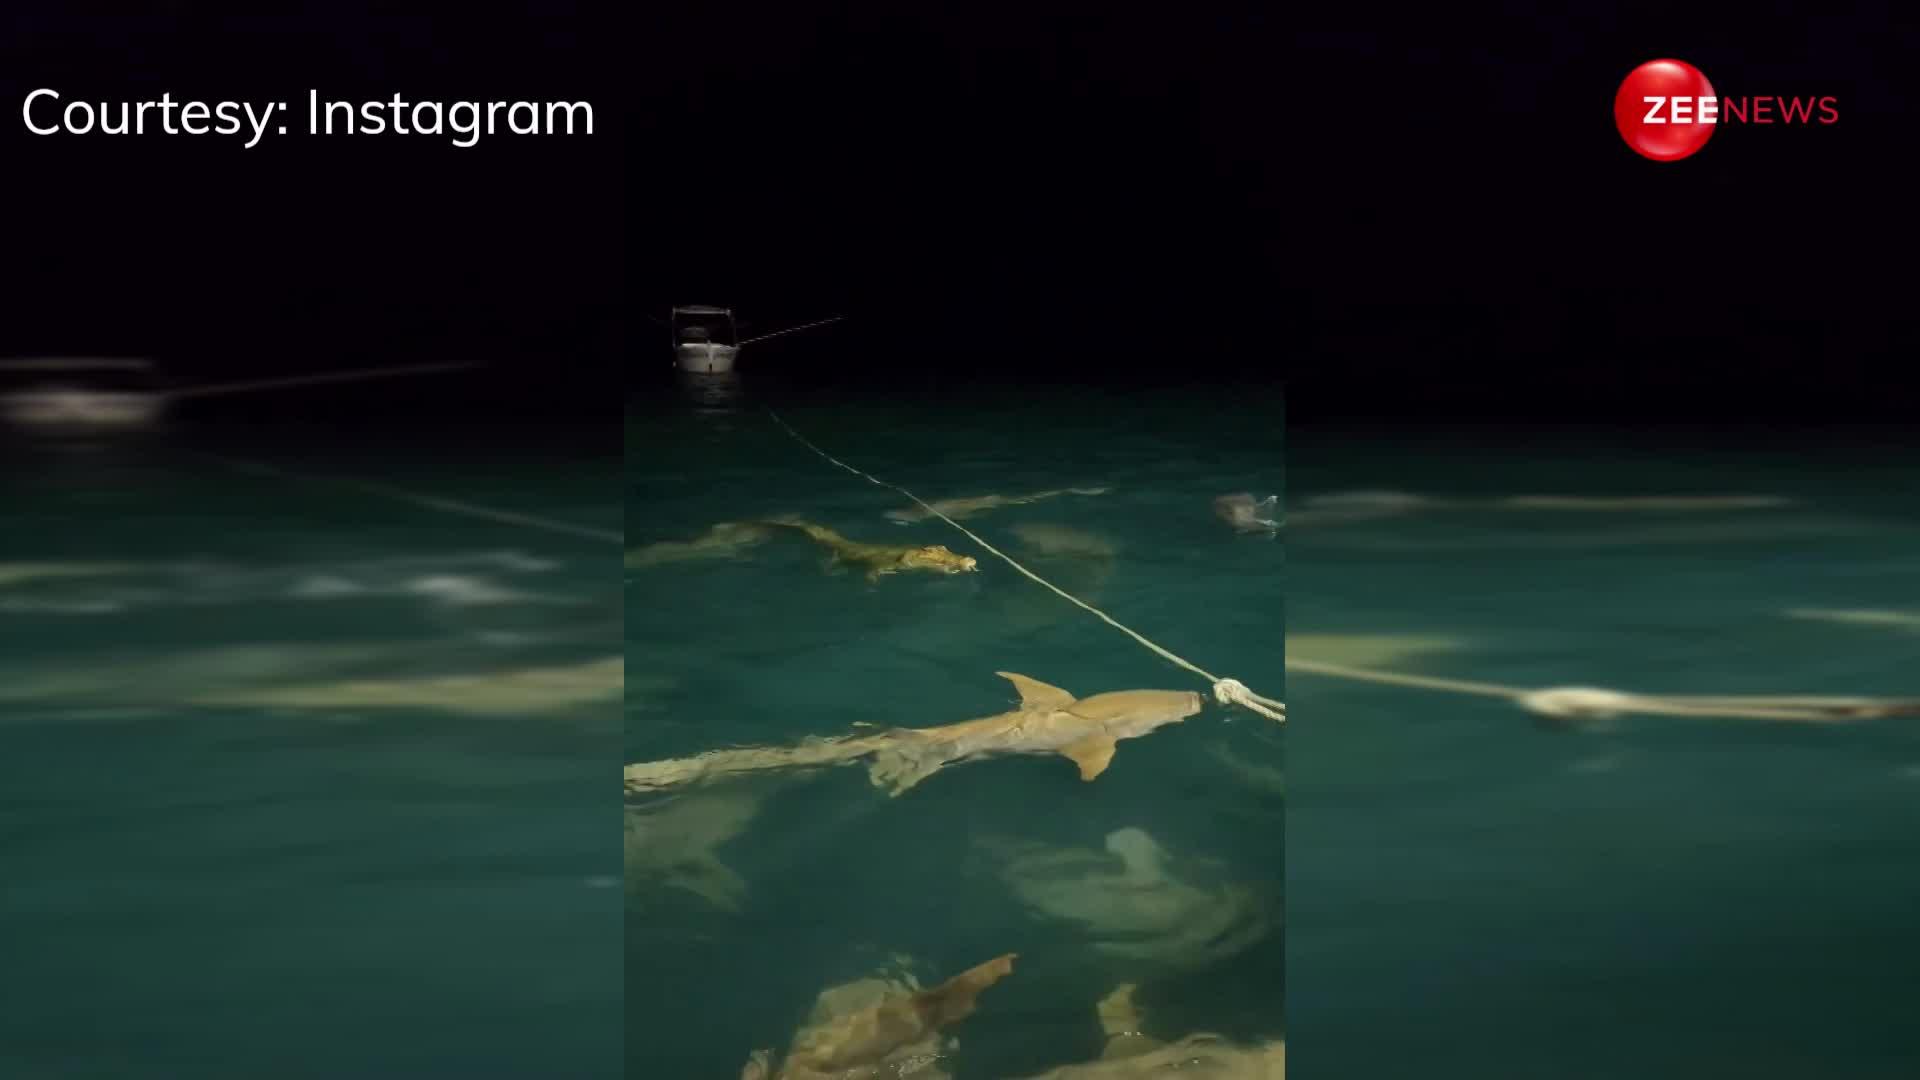 10 शार्क्स ने मिलकर मगरमच्छ पर किया जोरदार अटैक, तभी हुआ कुछ ऐसा जिसका किसी को नहीं था अंदाजा...